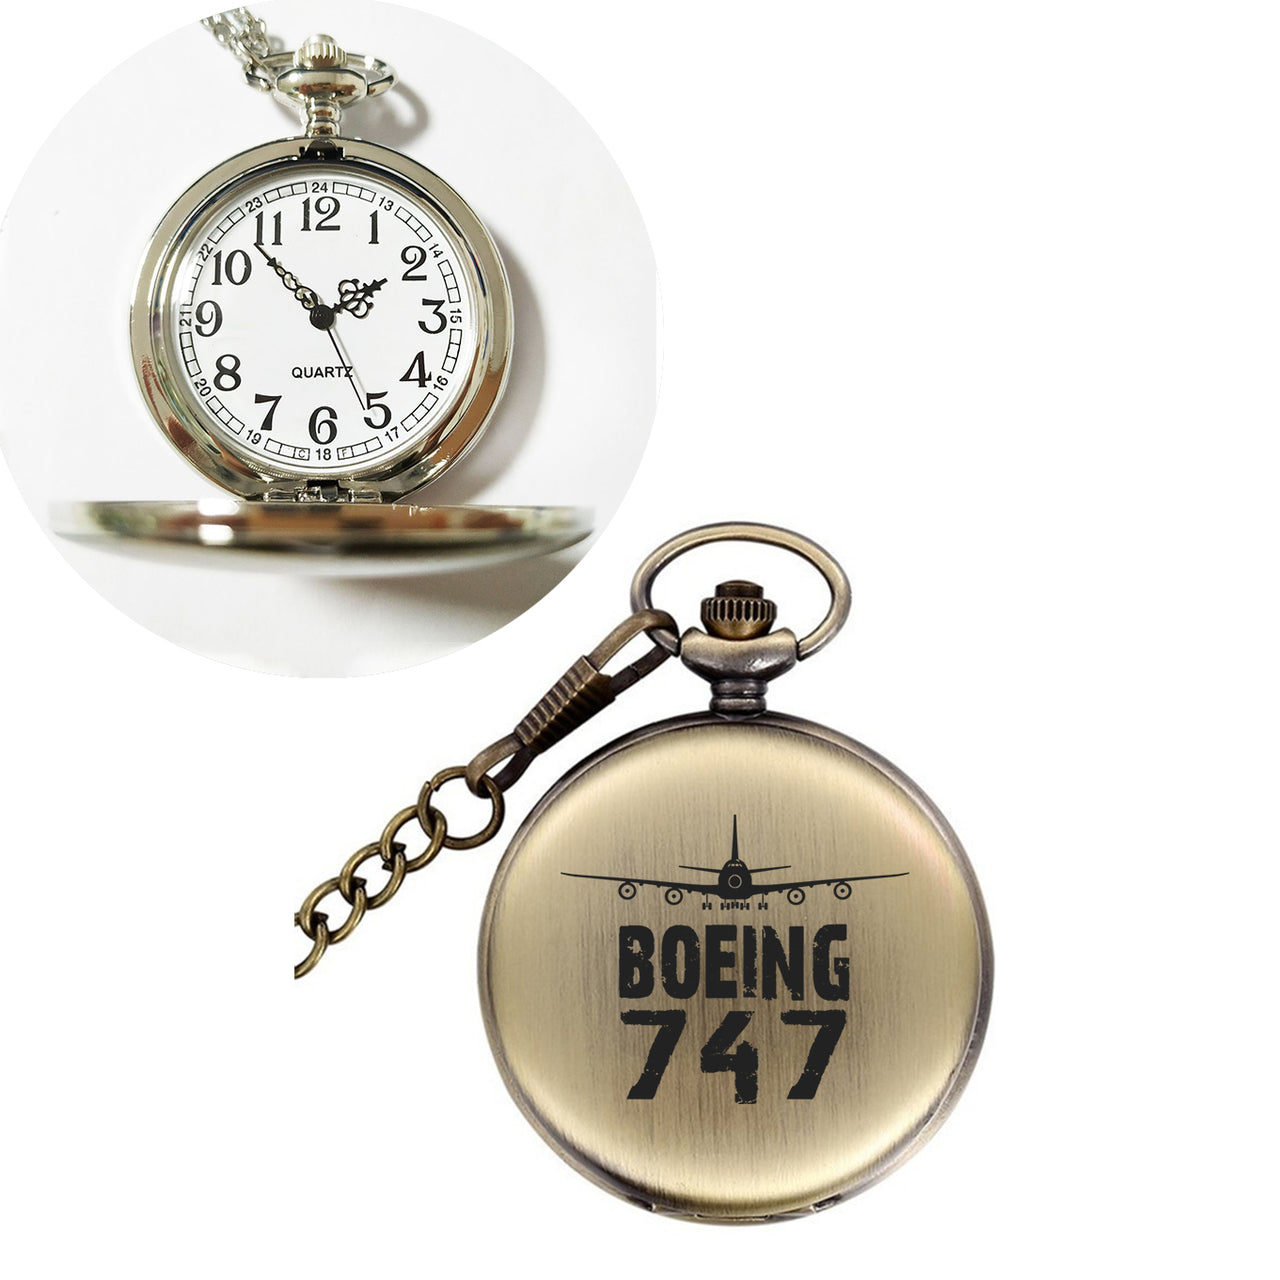 Boeing 747 & Plane Designed Pocket Watches